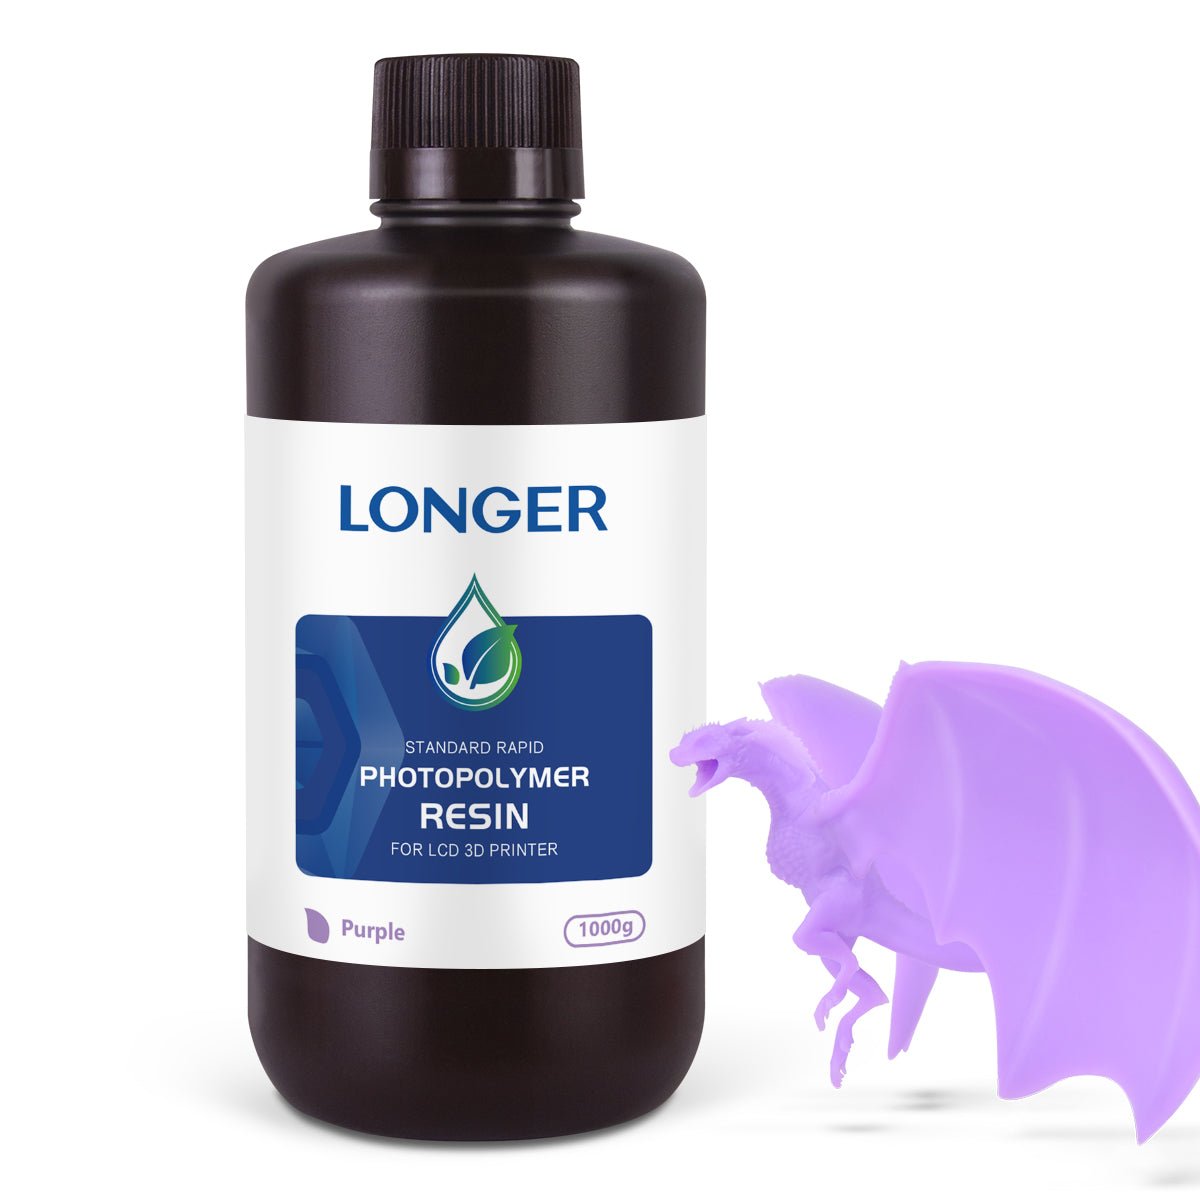 Standard UV Resin - LONGER